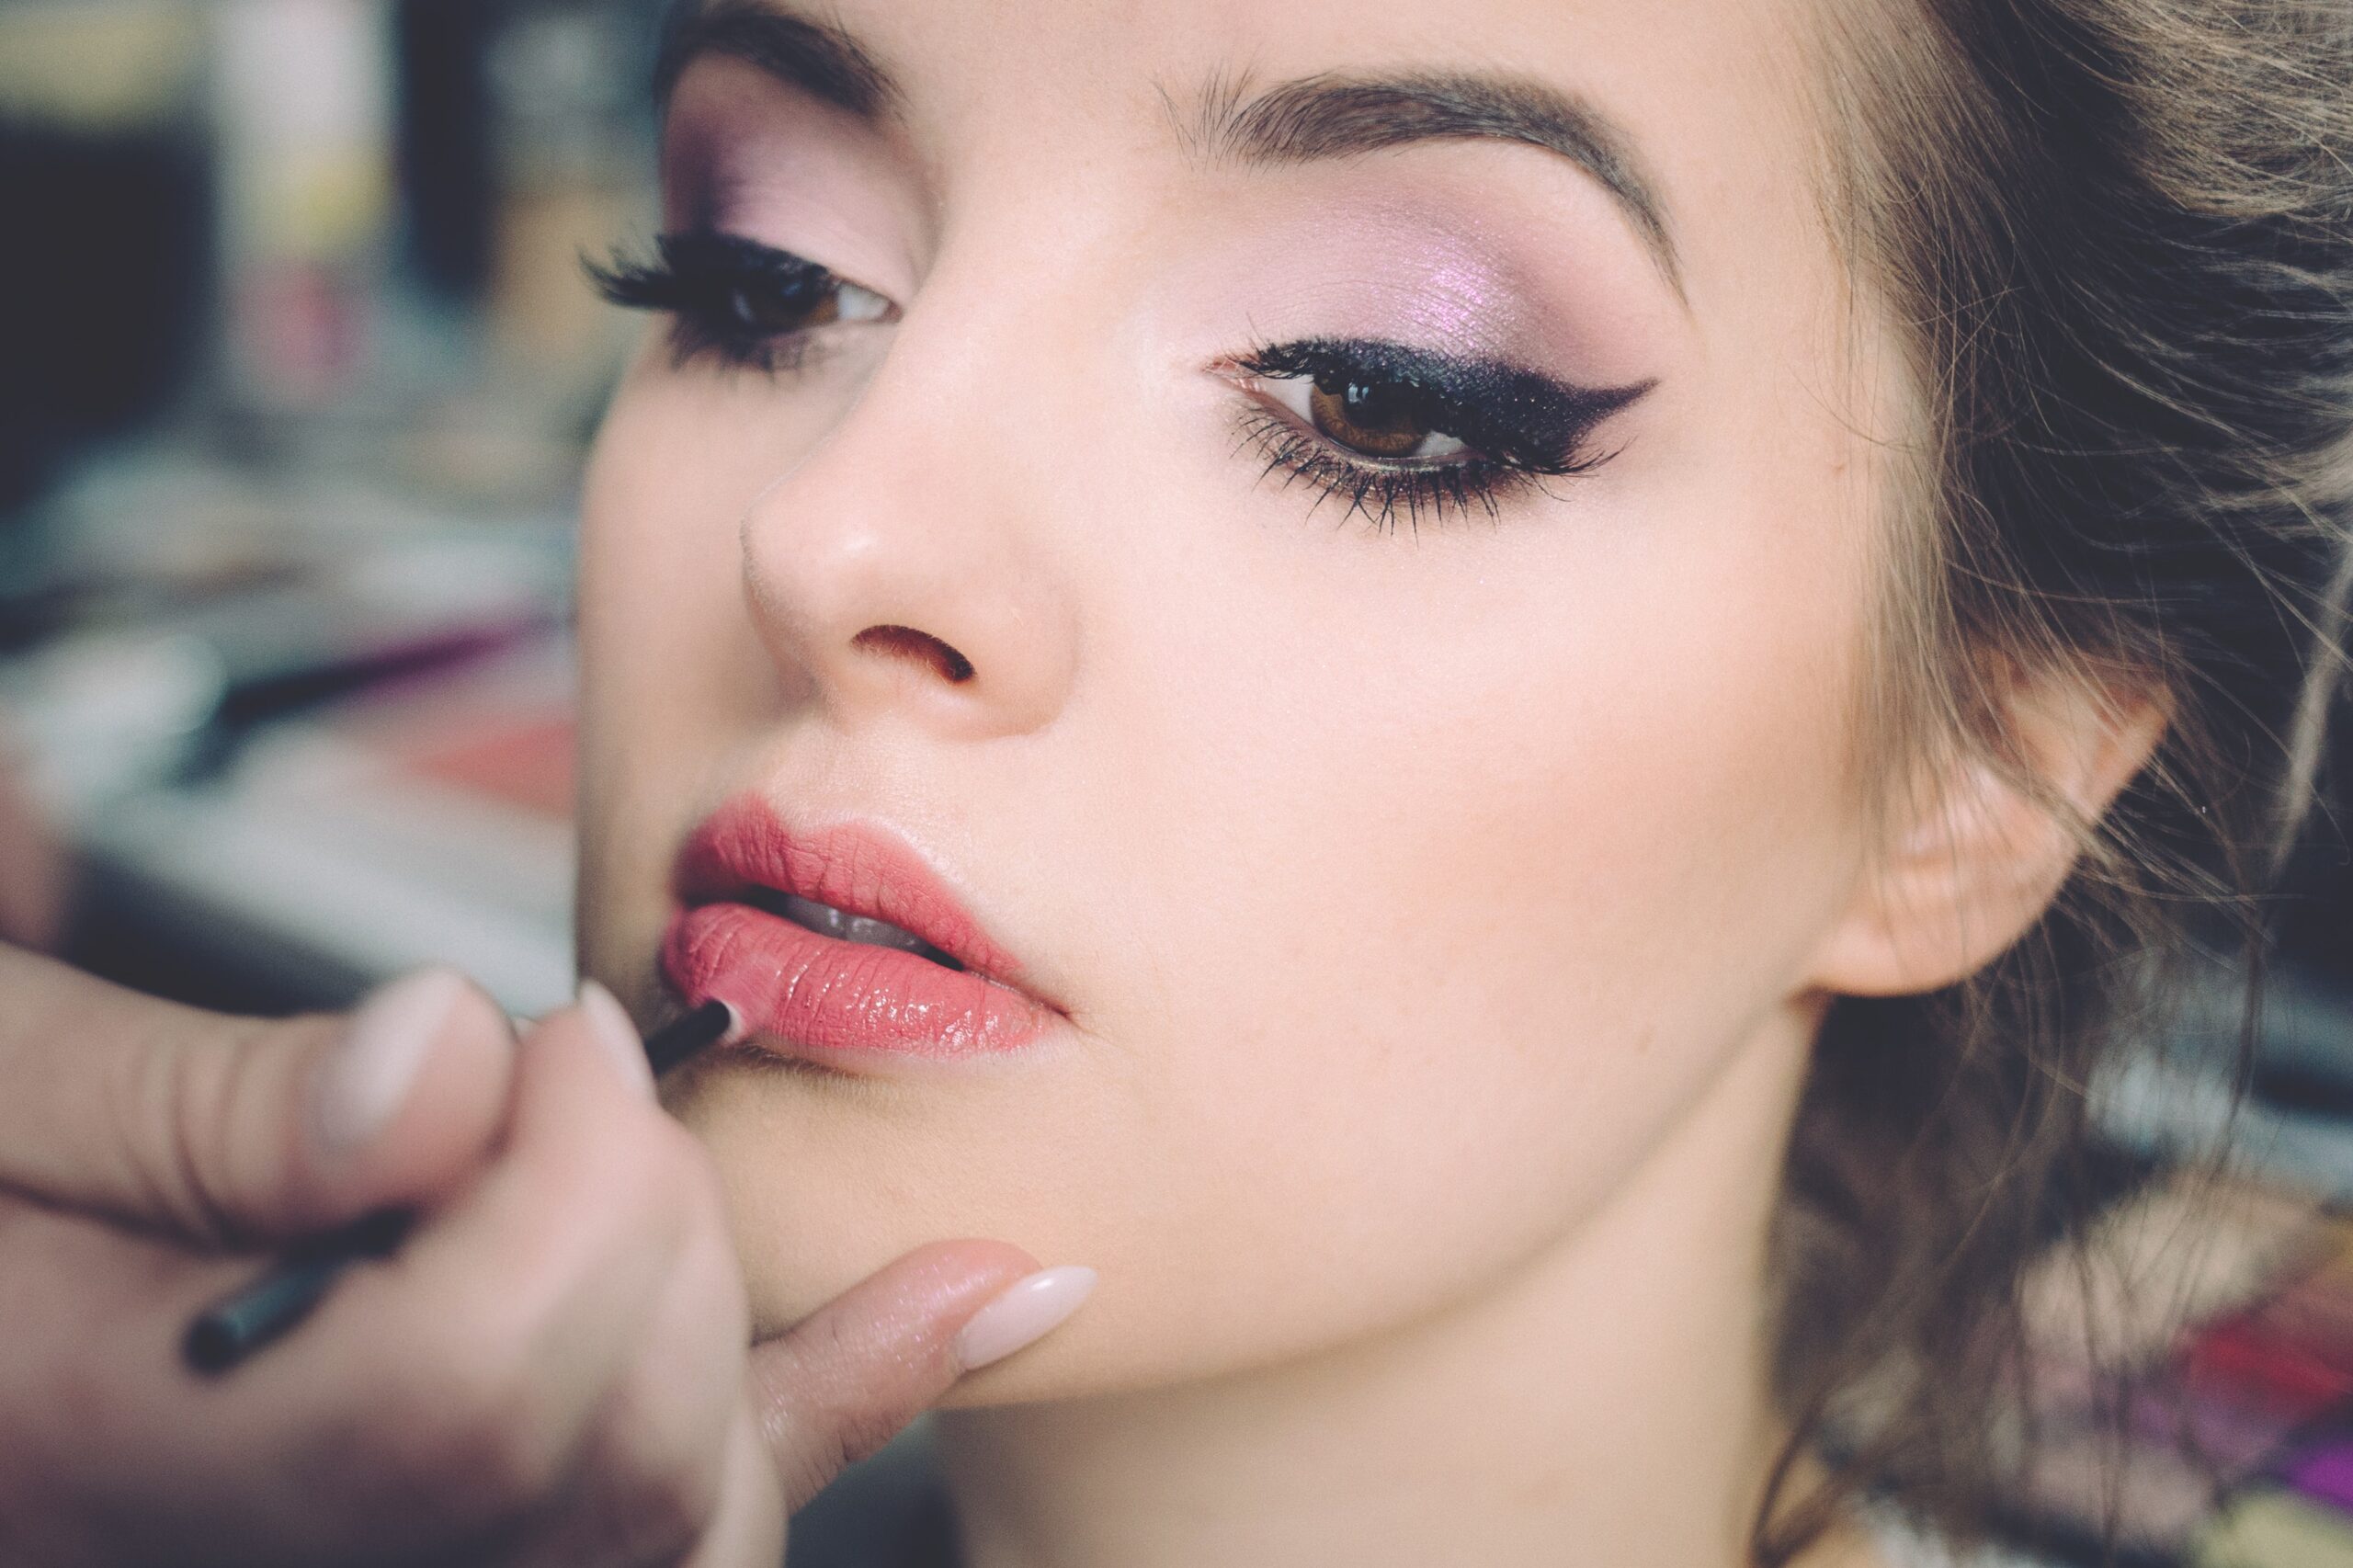 Makeup Artist applying lipstick